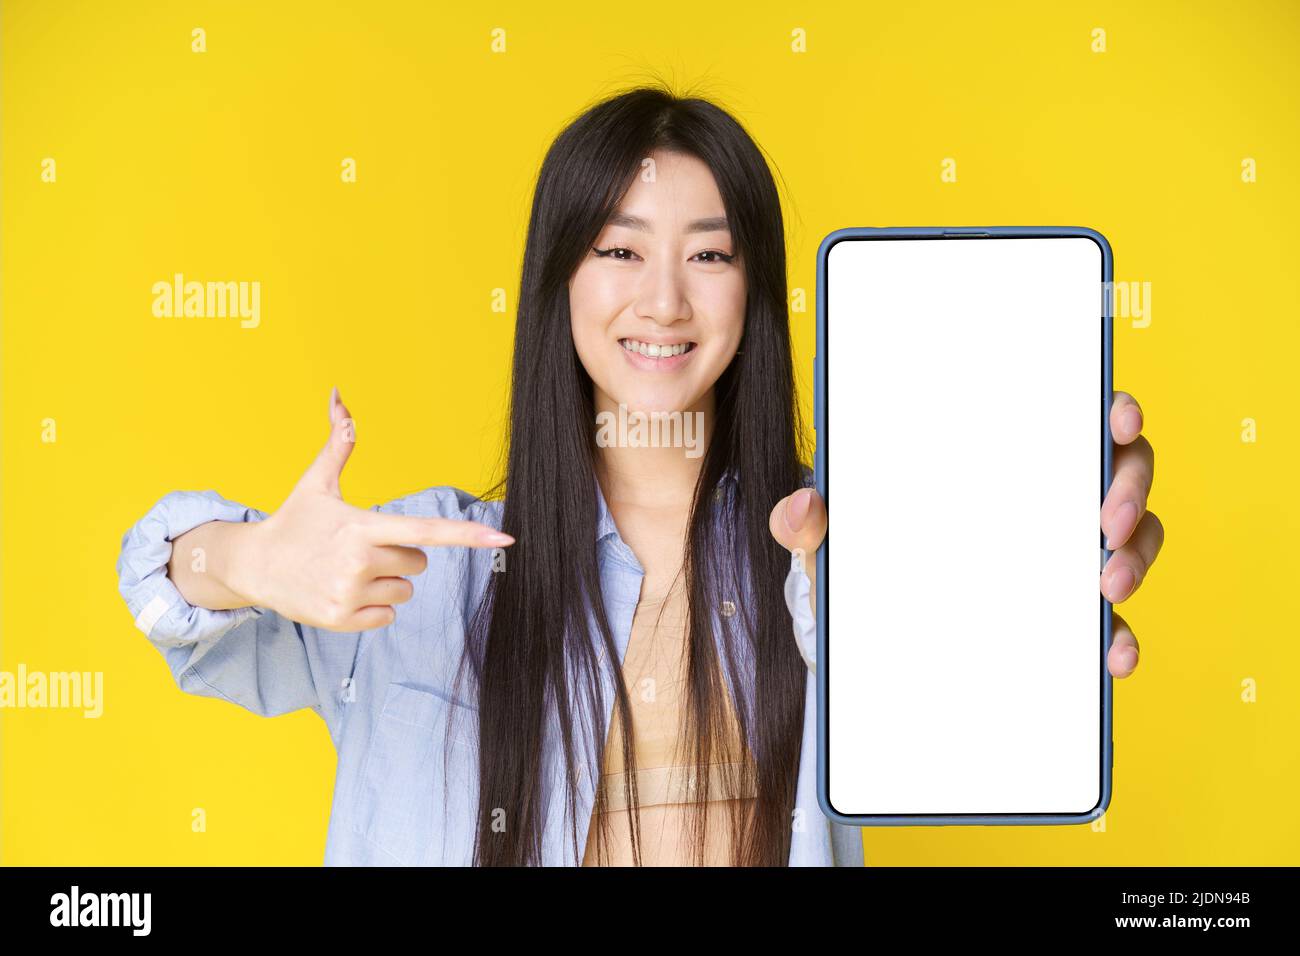 Ragazza asiatica affascinante con smartphone in mano puntando il dito su schermo bianco ed emozionante guardando la fotocamera isolato su sfondo giallo. Grande offerta. Posizionamento di prodotti pubblicitari per app mobili. Foto Stock